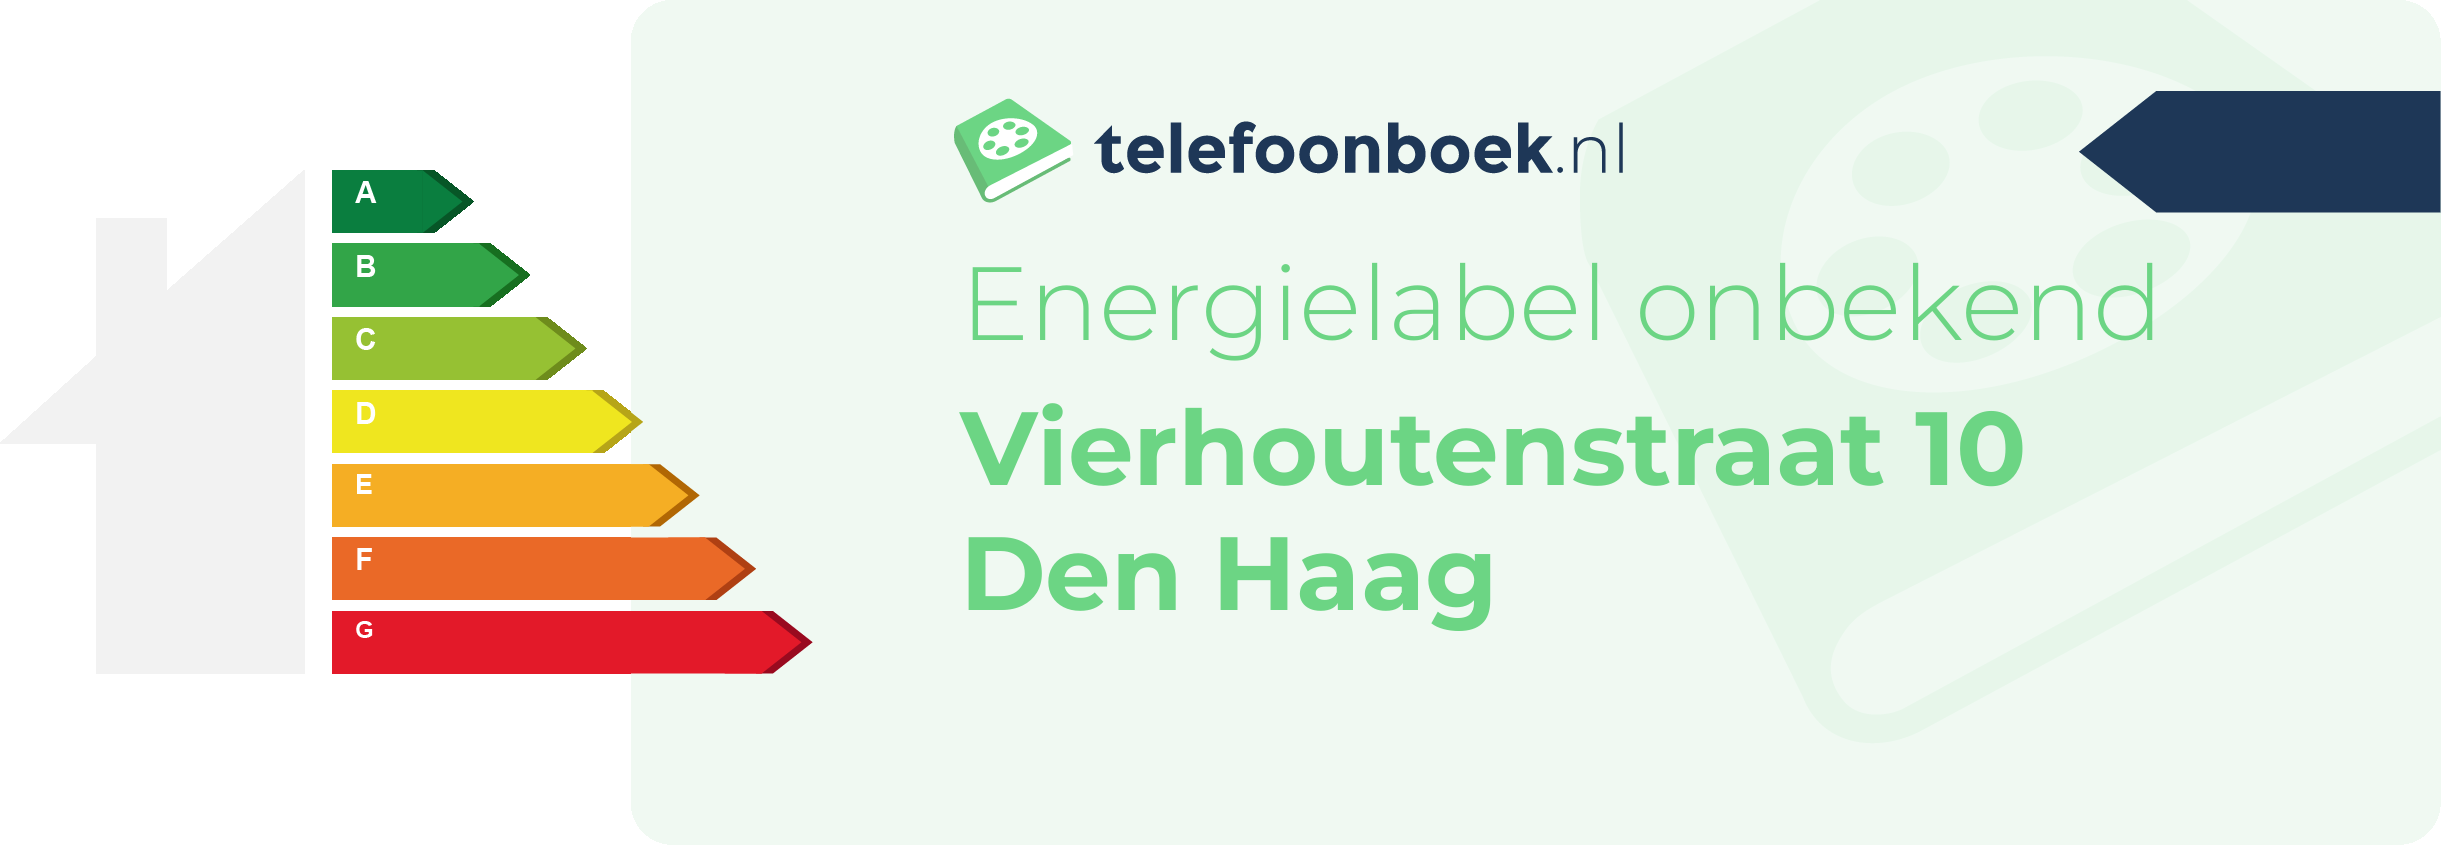 Energielabel Vierhoutenstraat 10 Den Haag